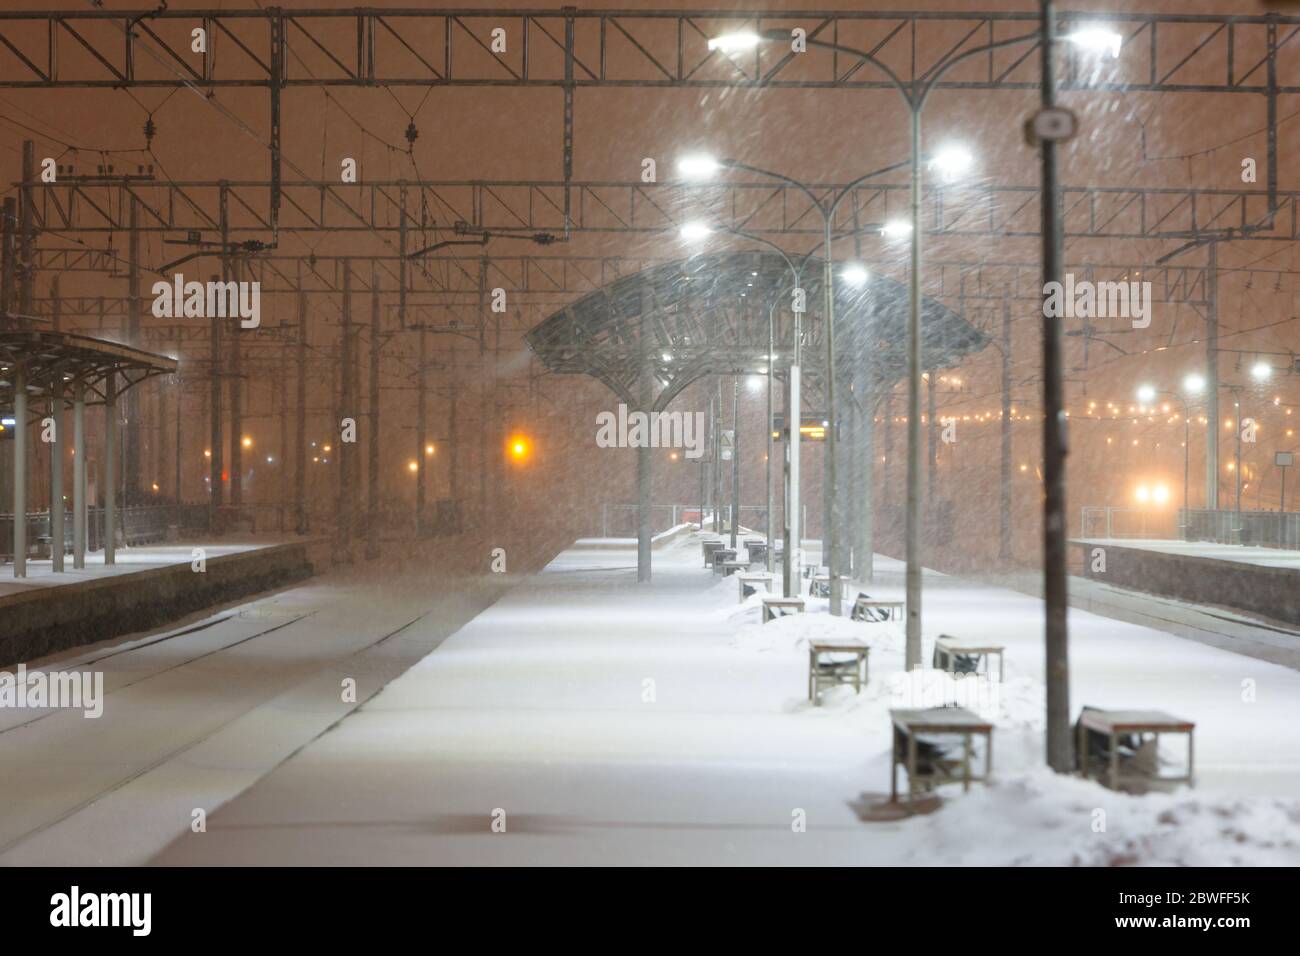 Leerer Bahnsteig ohne Passagiere im Schneesturm/starkem Schneefall in der Nacht. Eisenbahn, schlechtes Wetter Stockfoto